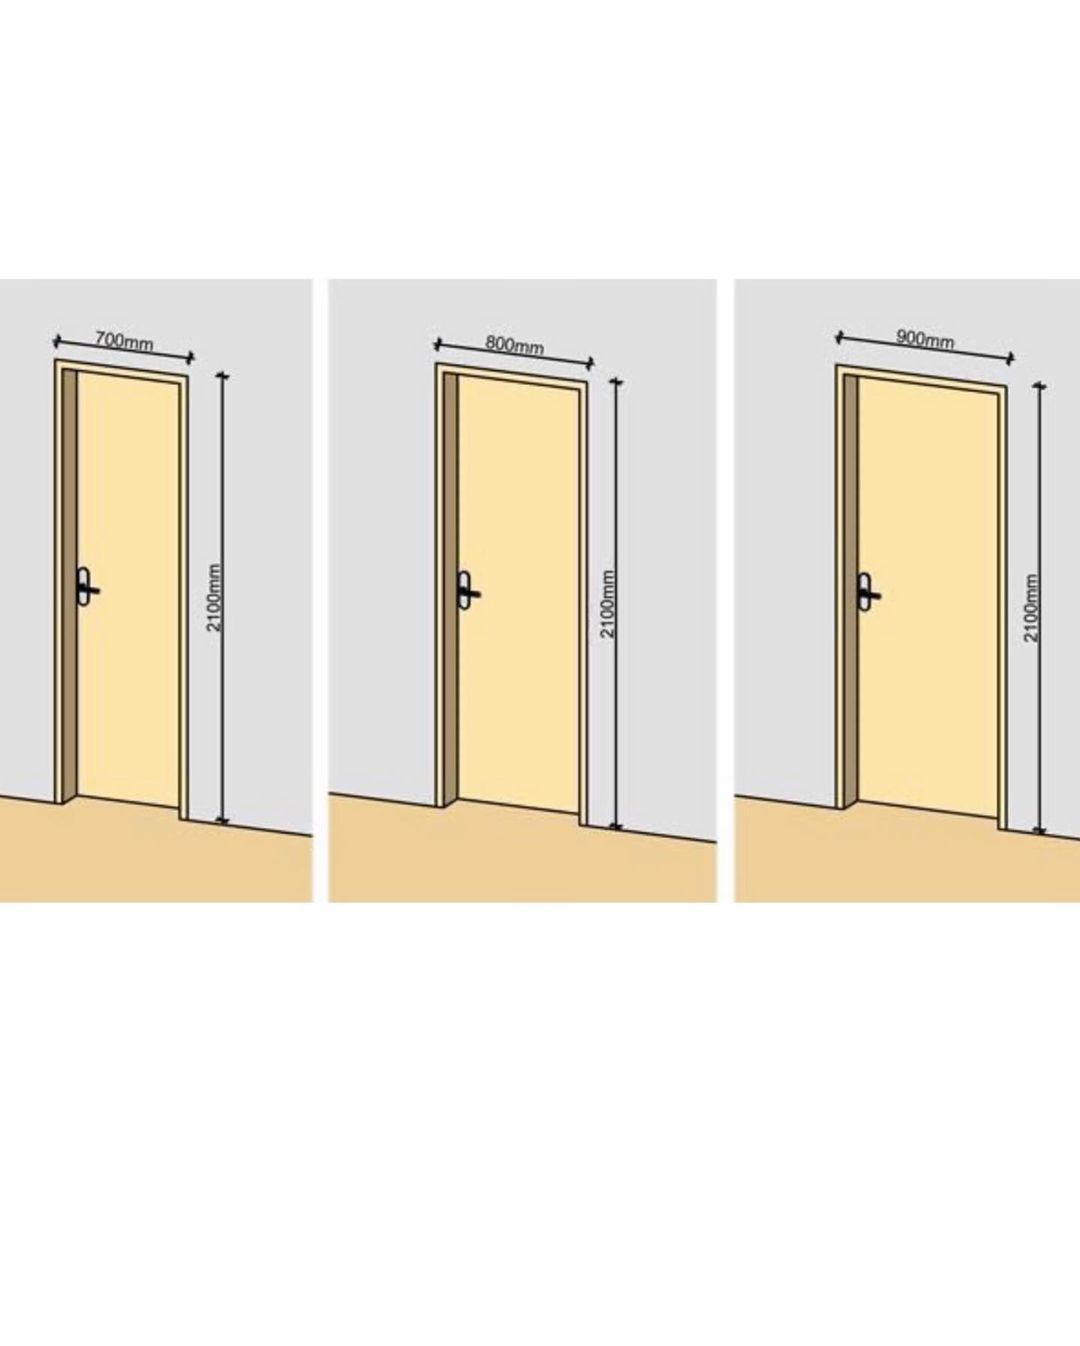 Сколько сантиметров дверь. Межкомнатные двери высота проема стандарт. Стандартный размер полотна межкомнатной двери. Ширина дверного проема межкомнатной двери стандарт. Высота дверного проема межкомнатной двери стандарт.